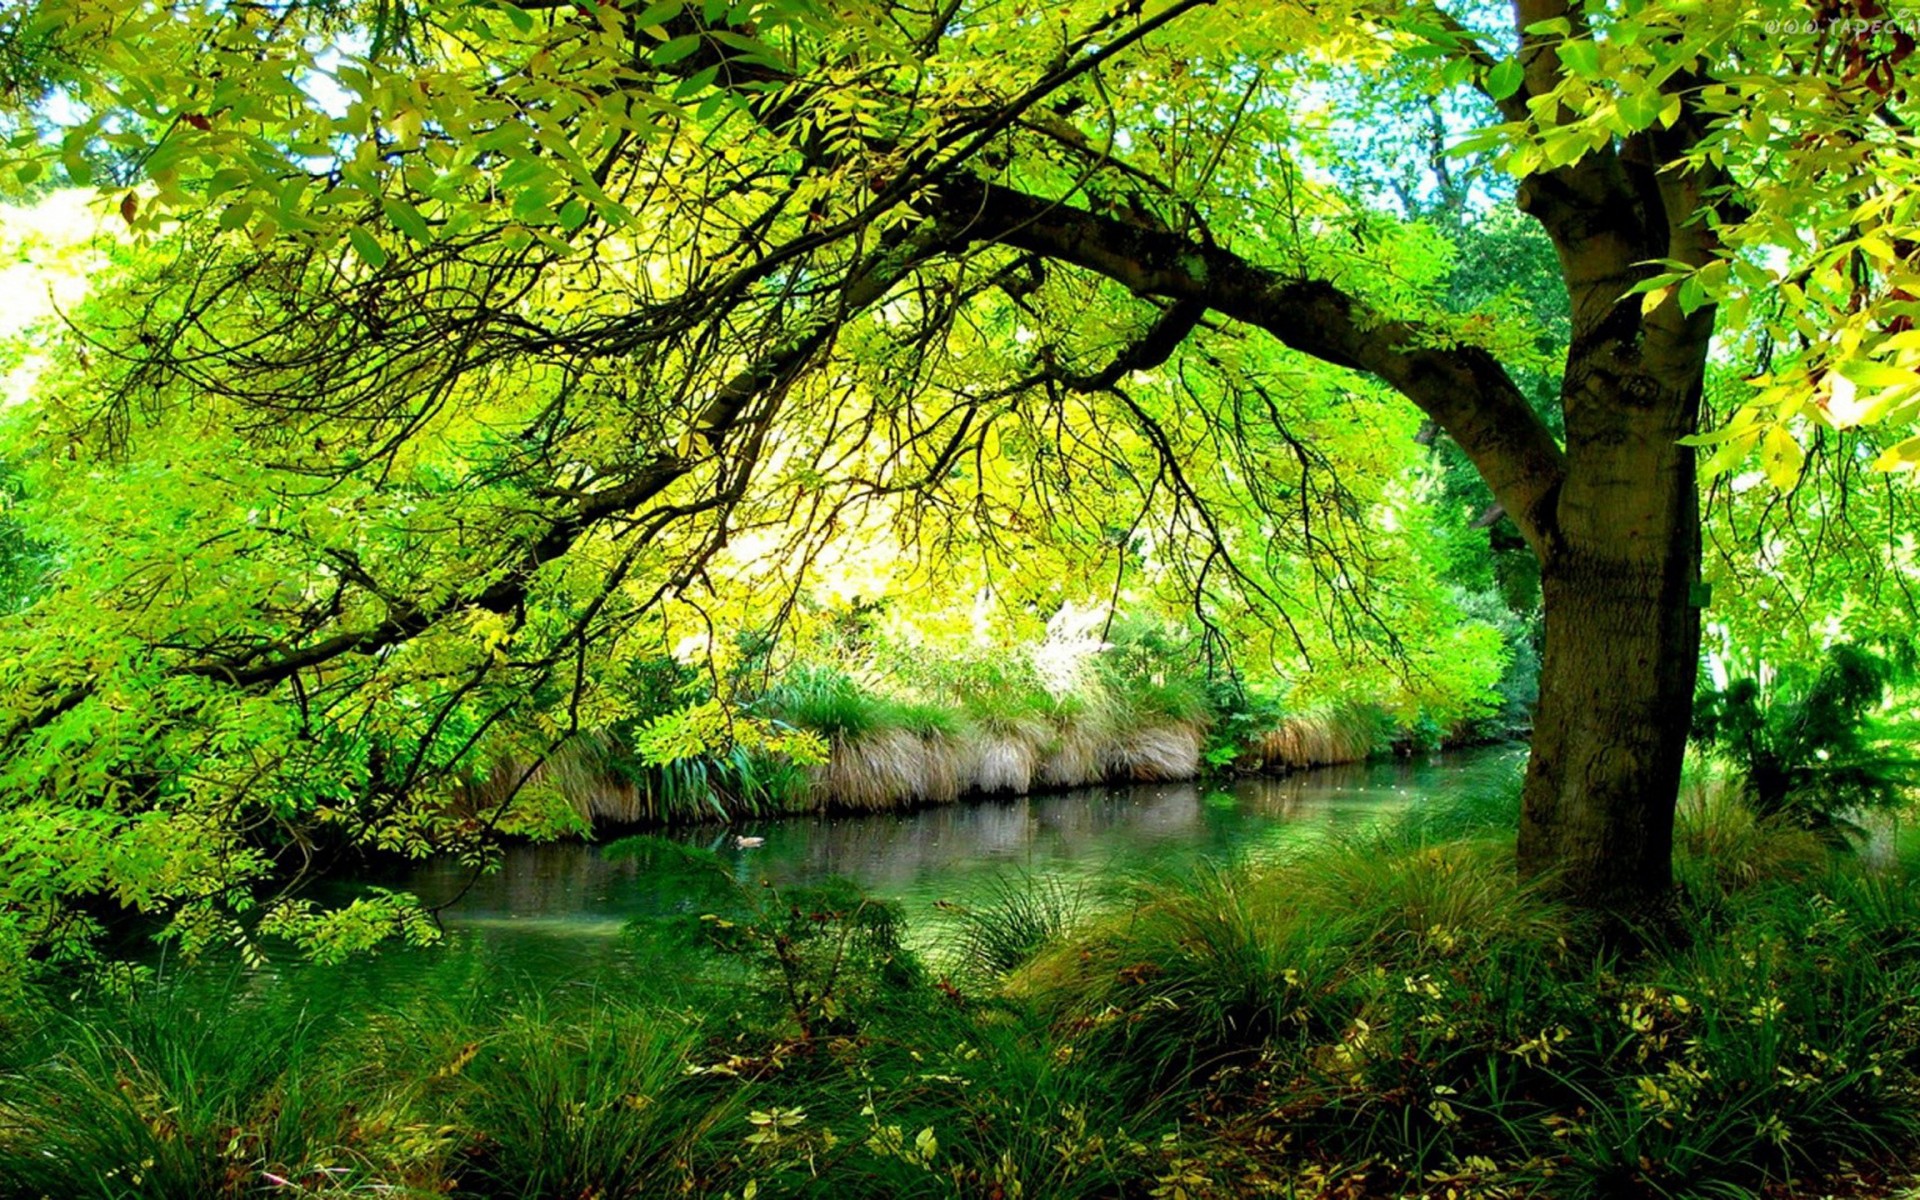 Скачать обои бесплатно Река, Лес, Дерево, Ветка, Зеленый, Земля/природа картинка на рабочий стол ПК